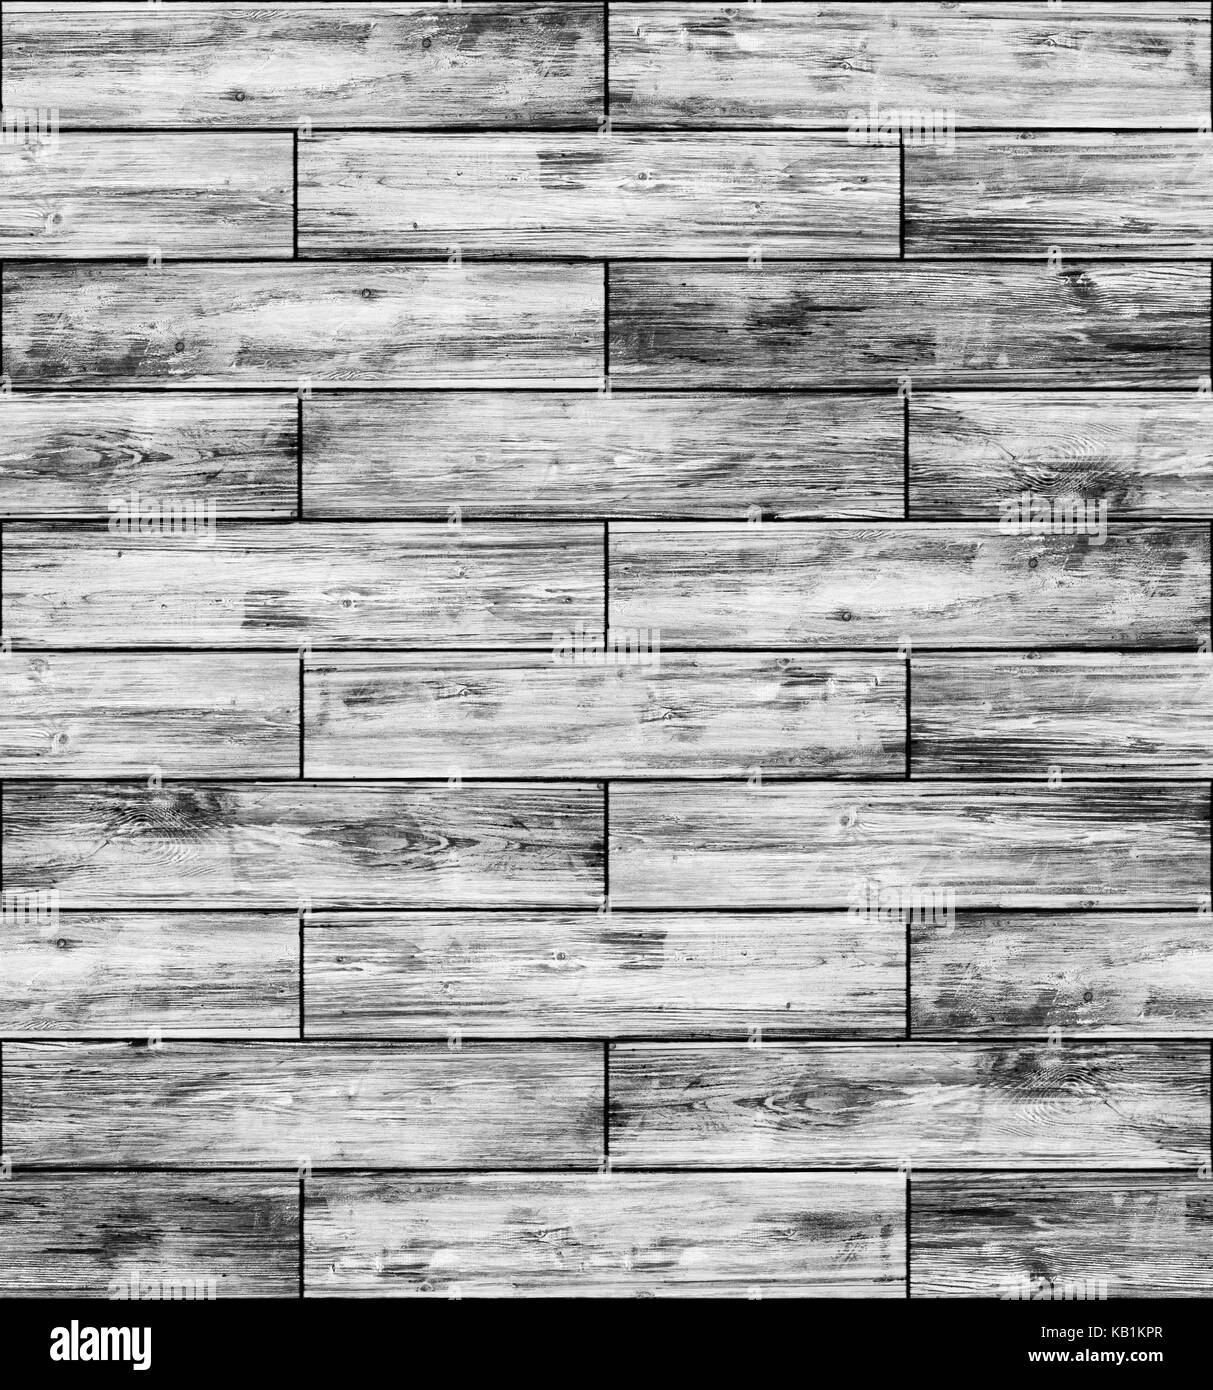 Wood grey parquet Stock Photo